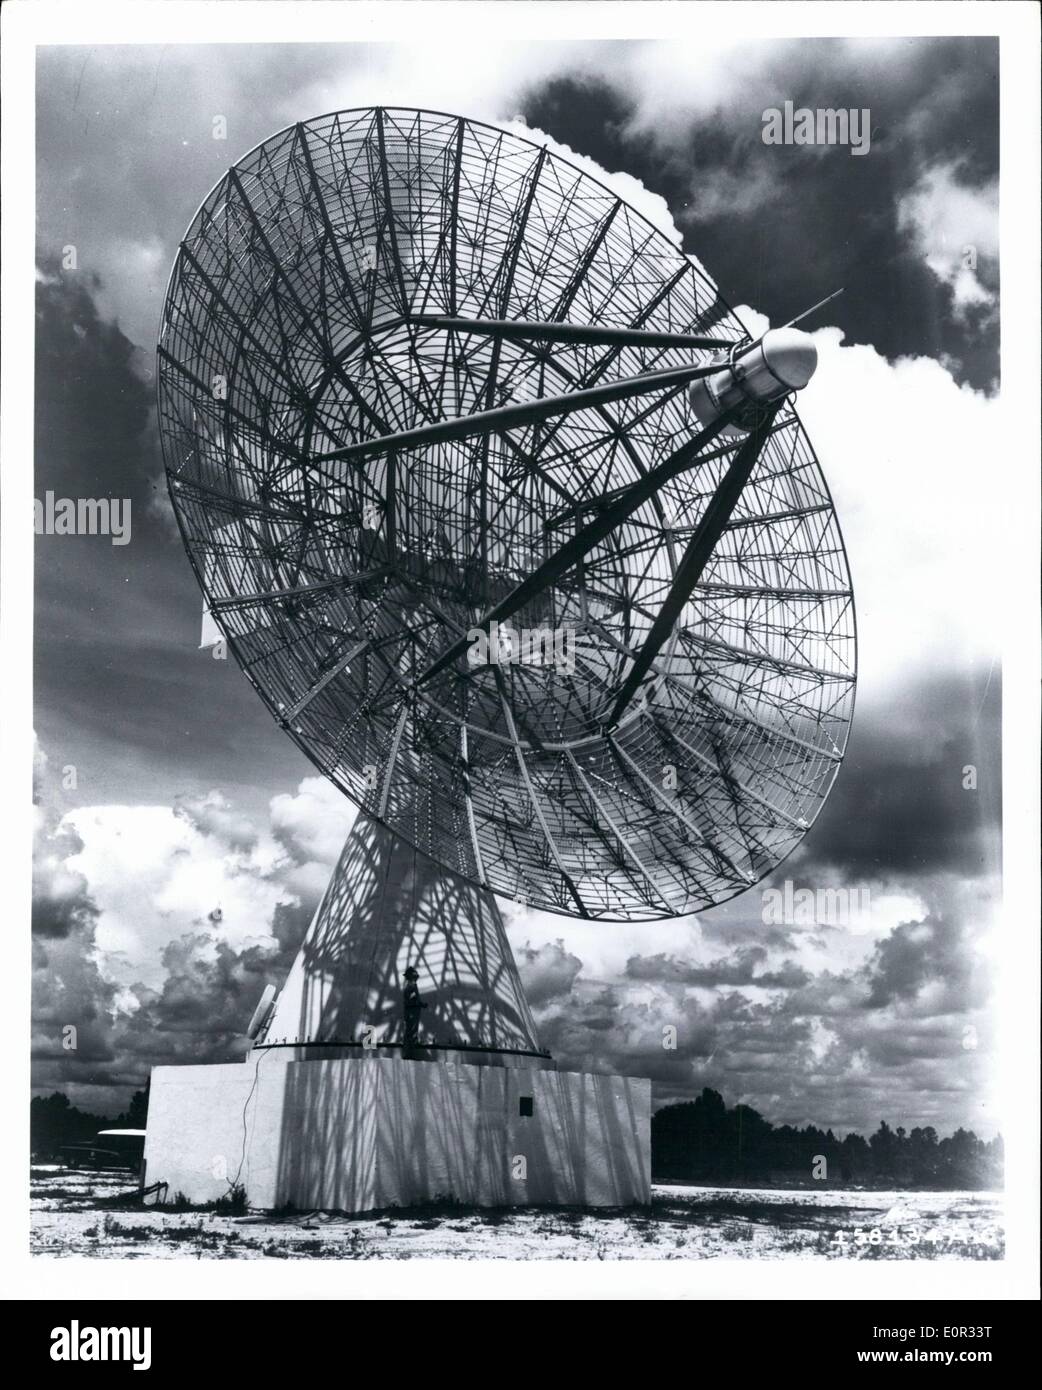 Enero 01, 1958 - La Fuerza Aérea de los Estados Unidos de nuevo el seguimiento automático de la antena de telemetría, designado TLM-18, torres encima de un edificio de siete pisos en su ubicación, en Melbourne, Florida. El 60-pie-web como antena, cree que es el más grande de su tipo en existencia, es uno de los cinco que está siendo construido para la Fuerza Aérea en sitios a lo largo de las 5,000 millas de rango de prueba de la Fuerza Aérea centro de ensayo de misiles, gorras Canaveral, Florida. El equipo será utilizado para realizar el seguimiento de misiles balísticos, y abarcará toda la gama con una cantidad moderada de superposición entre la instalación de la antena Foto de stock